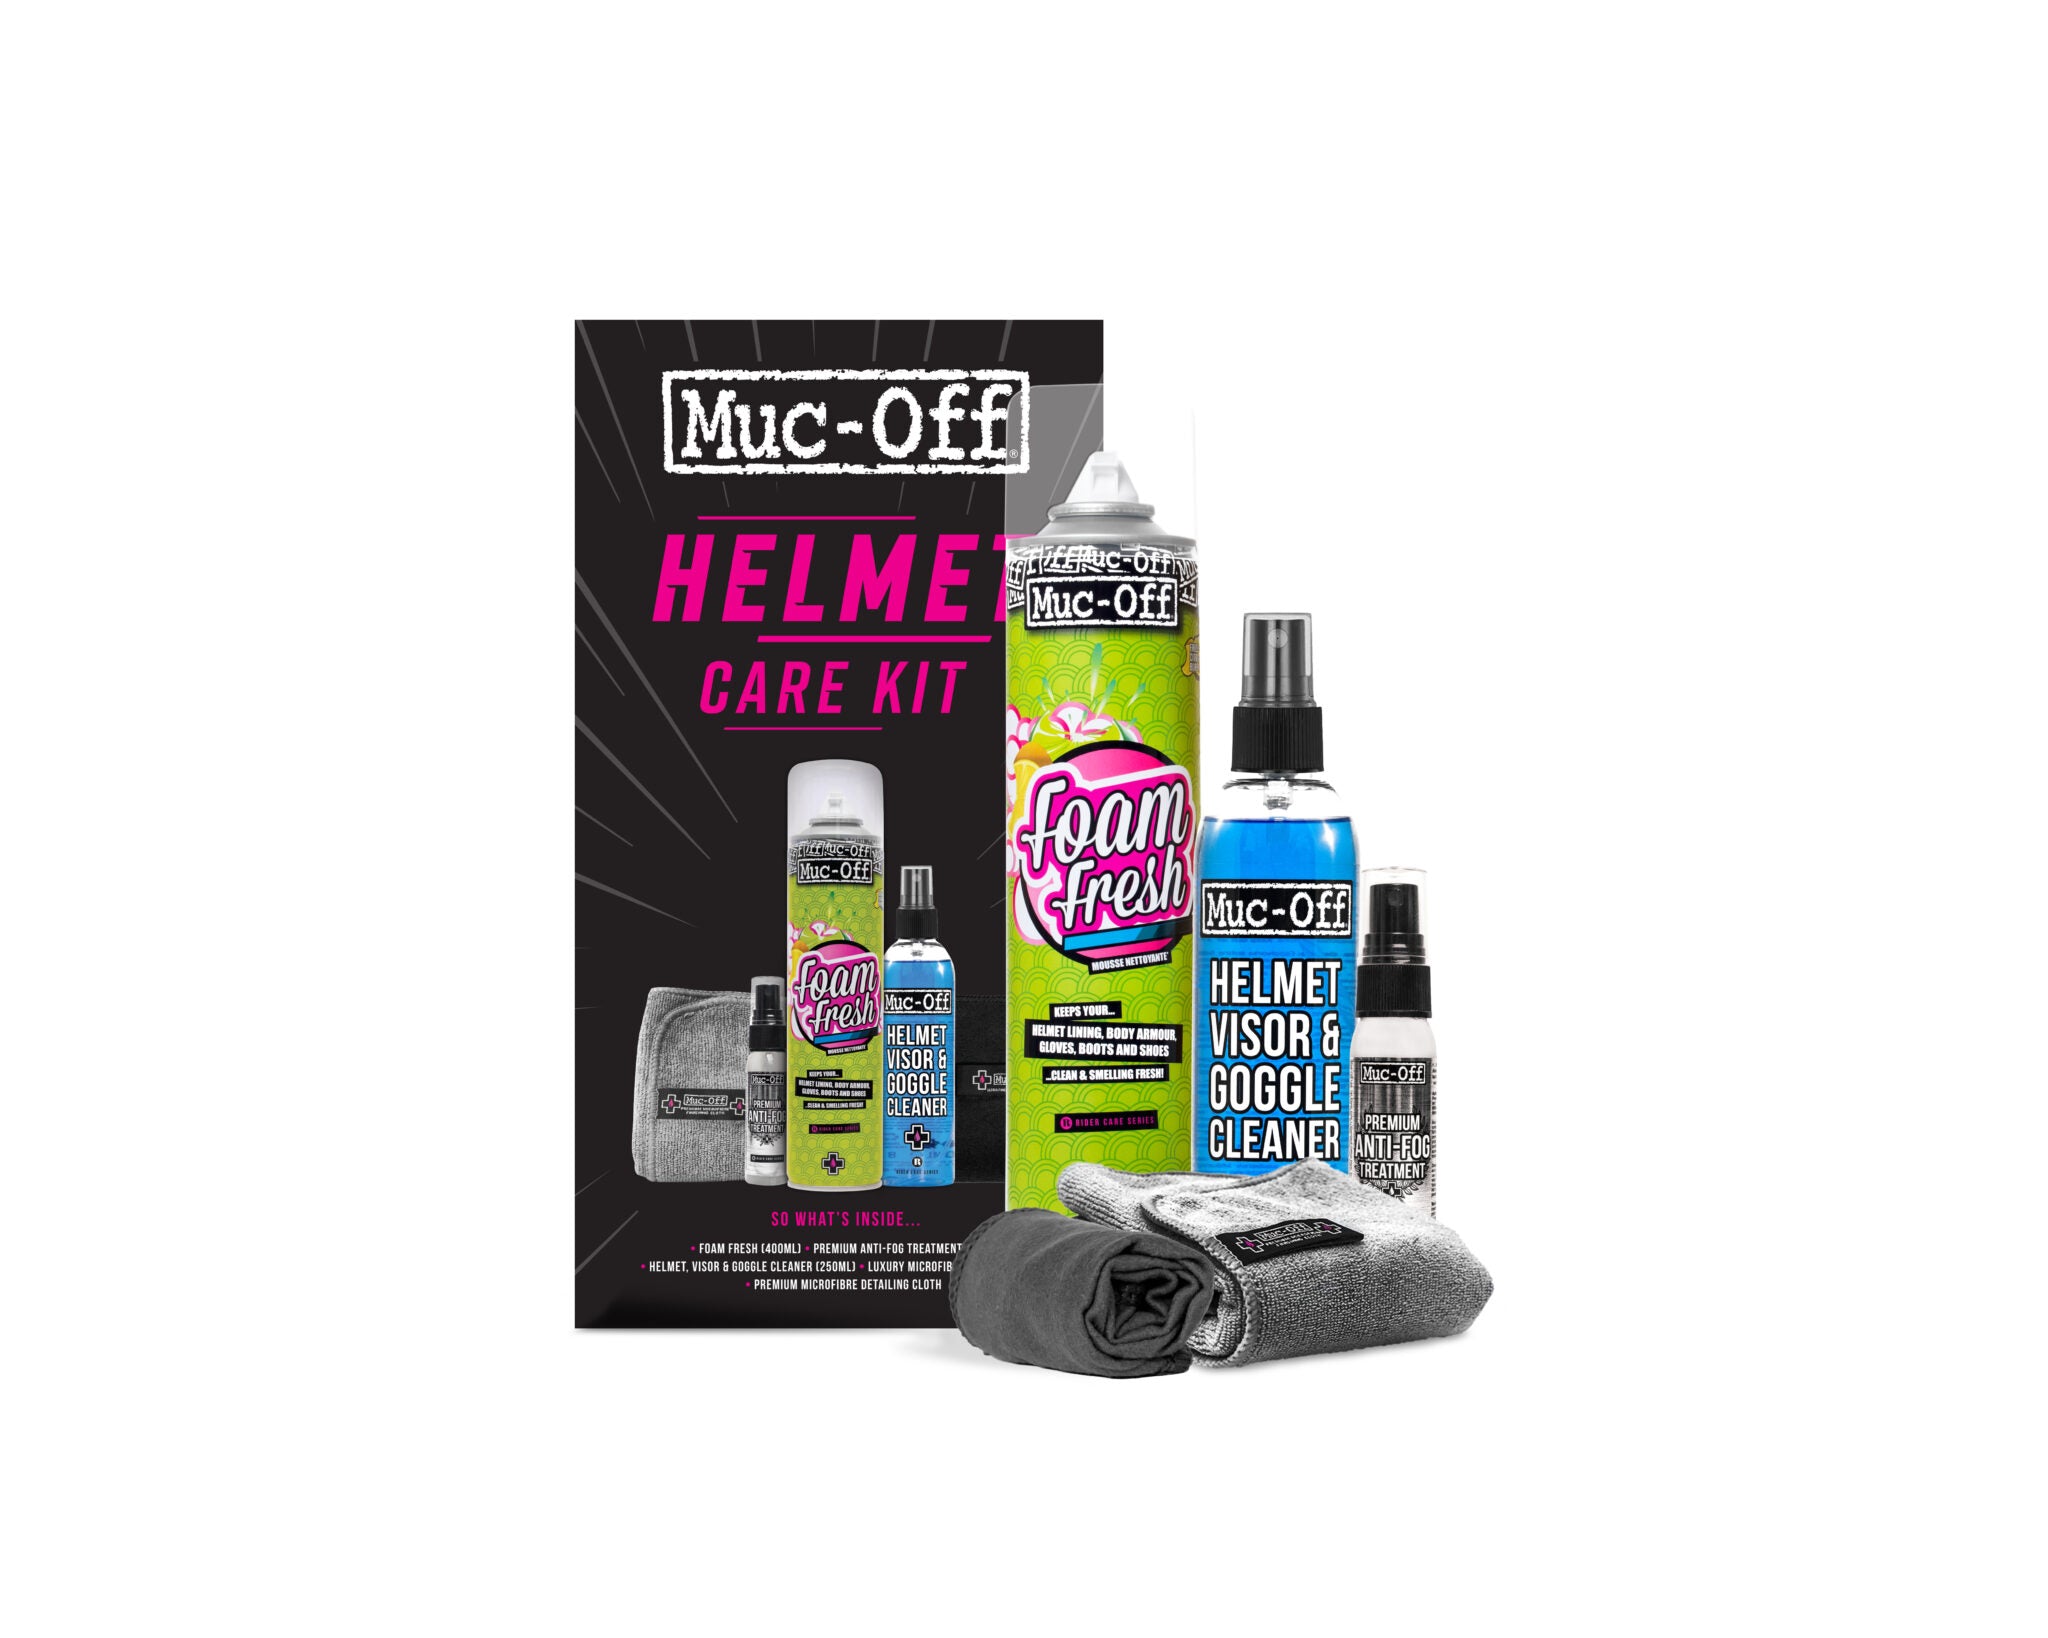 Helmet care kit from Muc-Off with foam fresh, helmet visor cleaner and antifog spray 